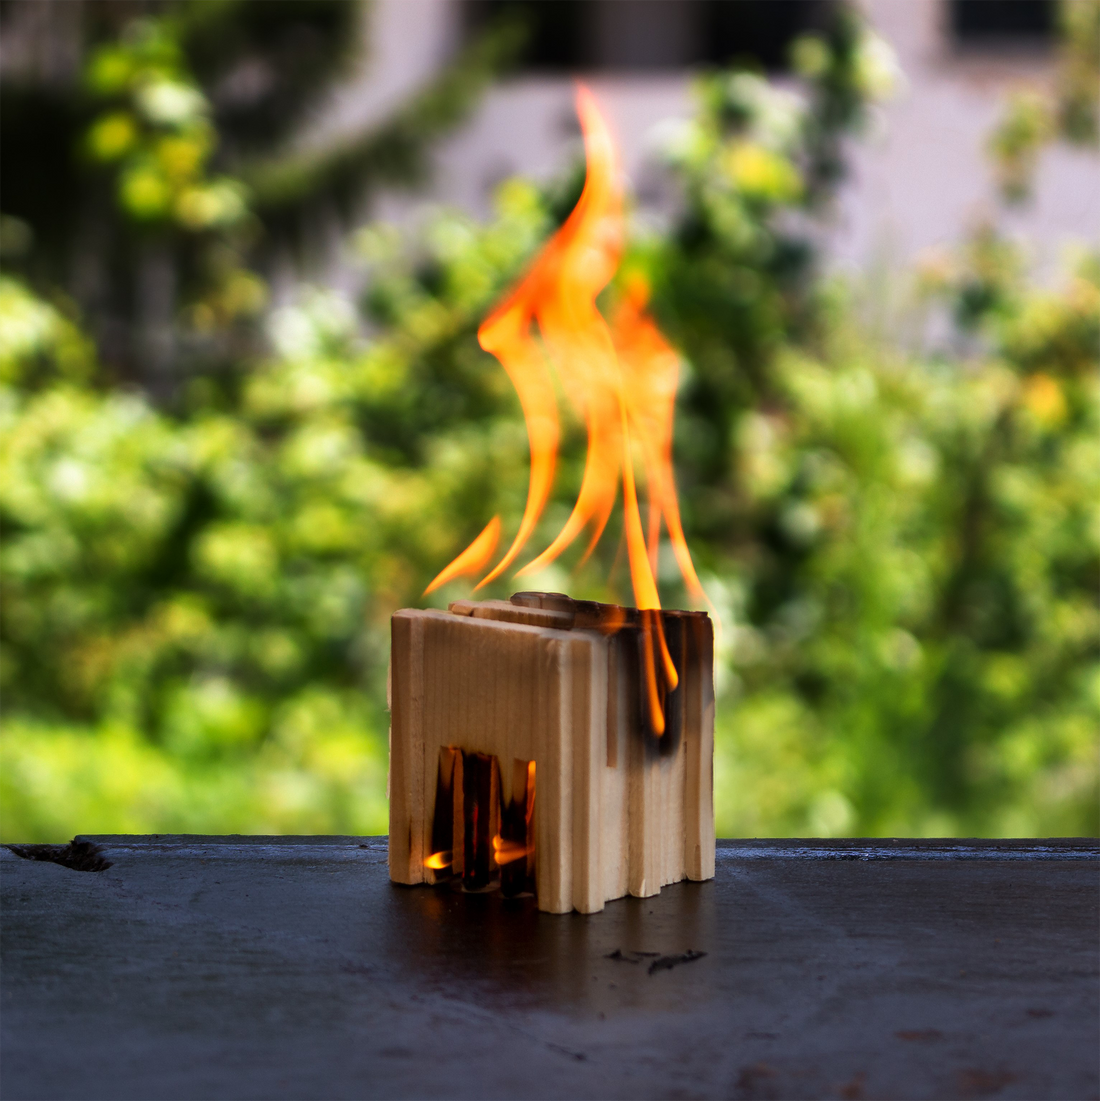 cubetto accendifuoco ecologico di legno naturale delegn acceso con fiamma